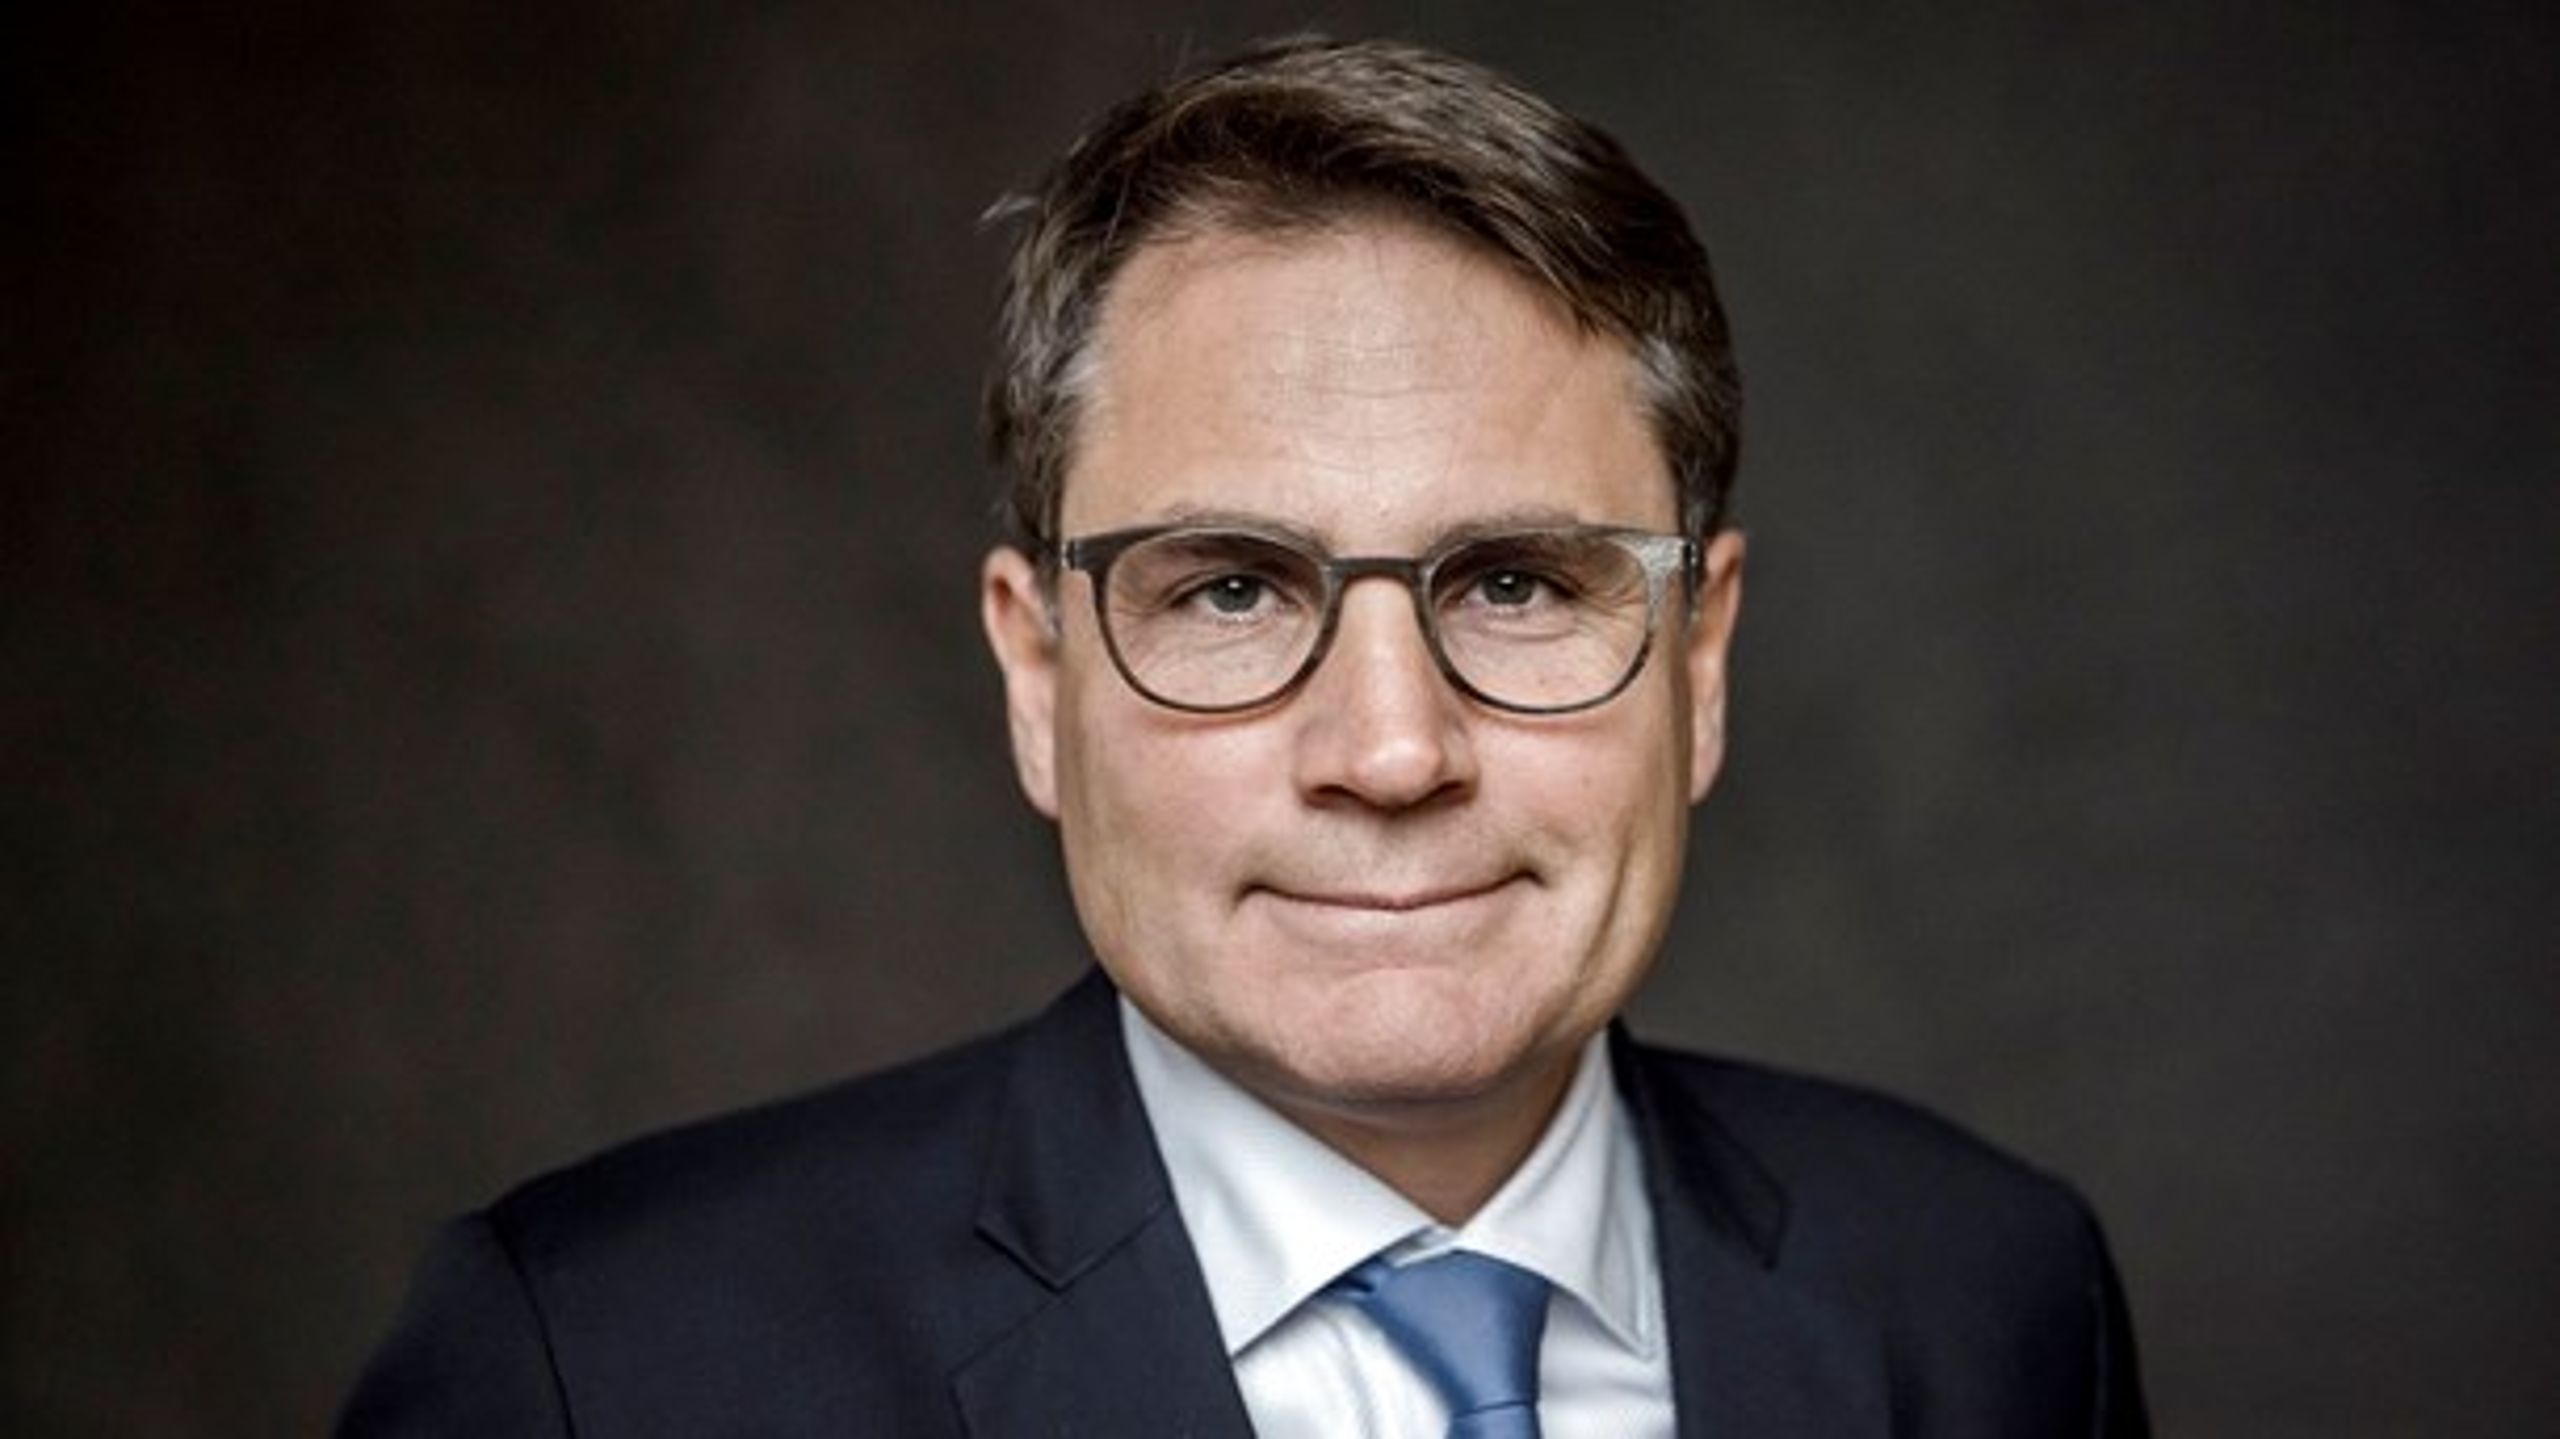 Onsdag eftermiddag meddelte erhvervsminister Brian Mikkelsen, at han træder ud af regeringen og stopper som minister. Han skal i stedet være administrerende direktør i Dansk Erhverv.&nbsp;